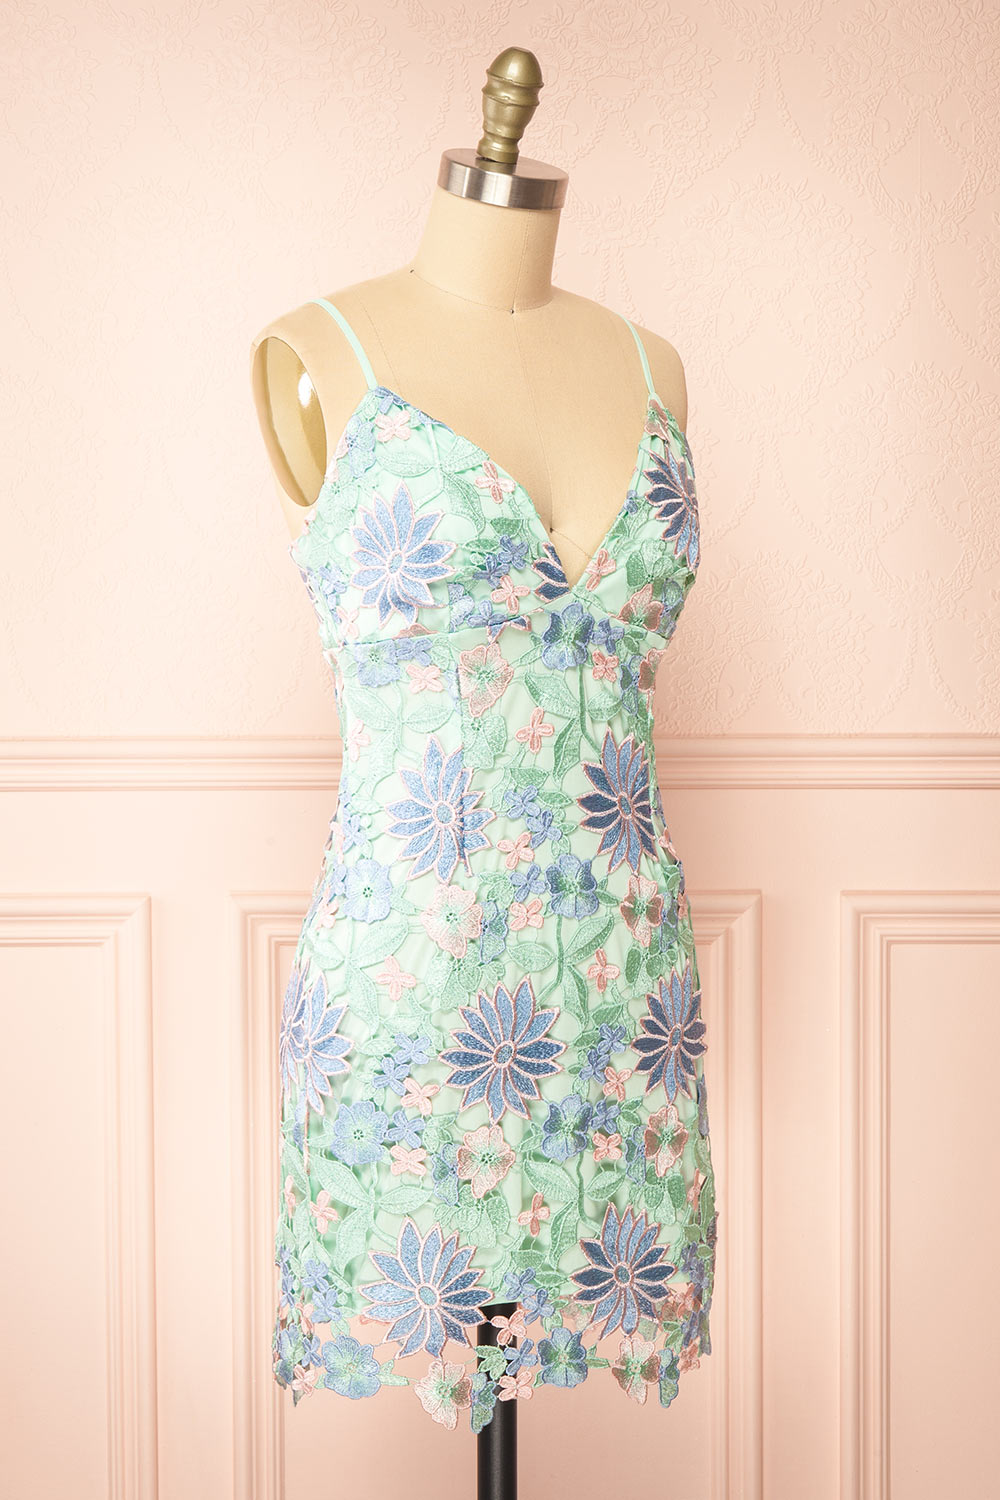 Lacrymonia Short Teal Floral Lace Dress | Boutique 1861 side view